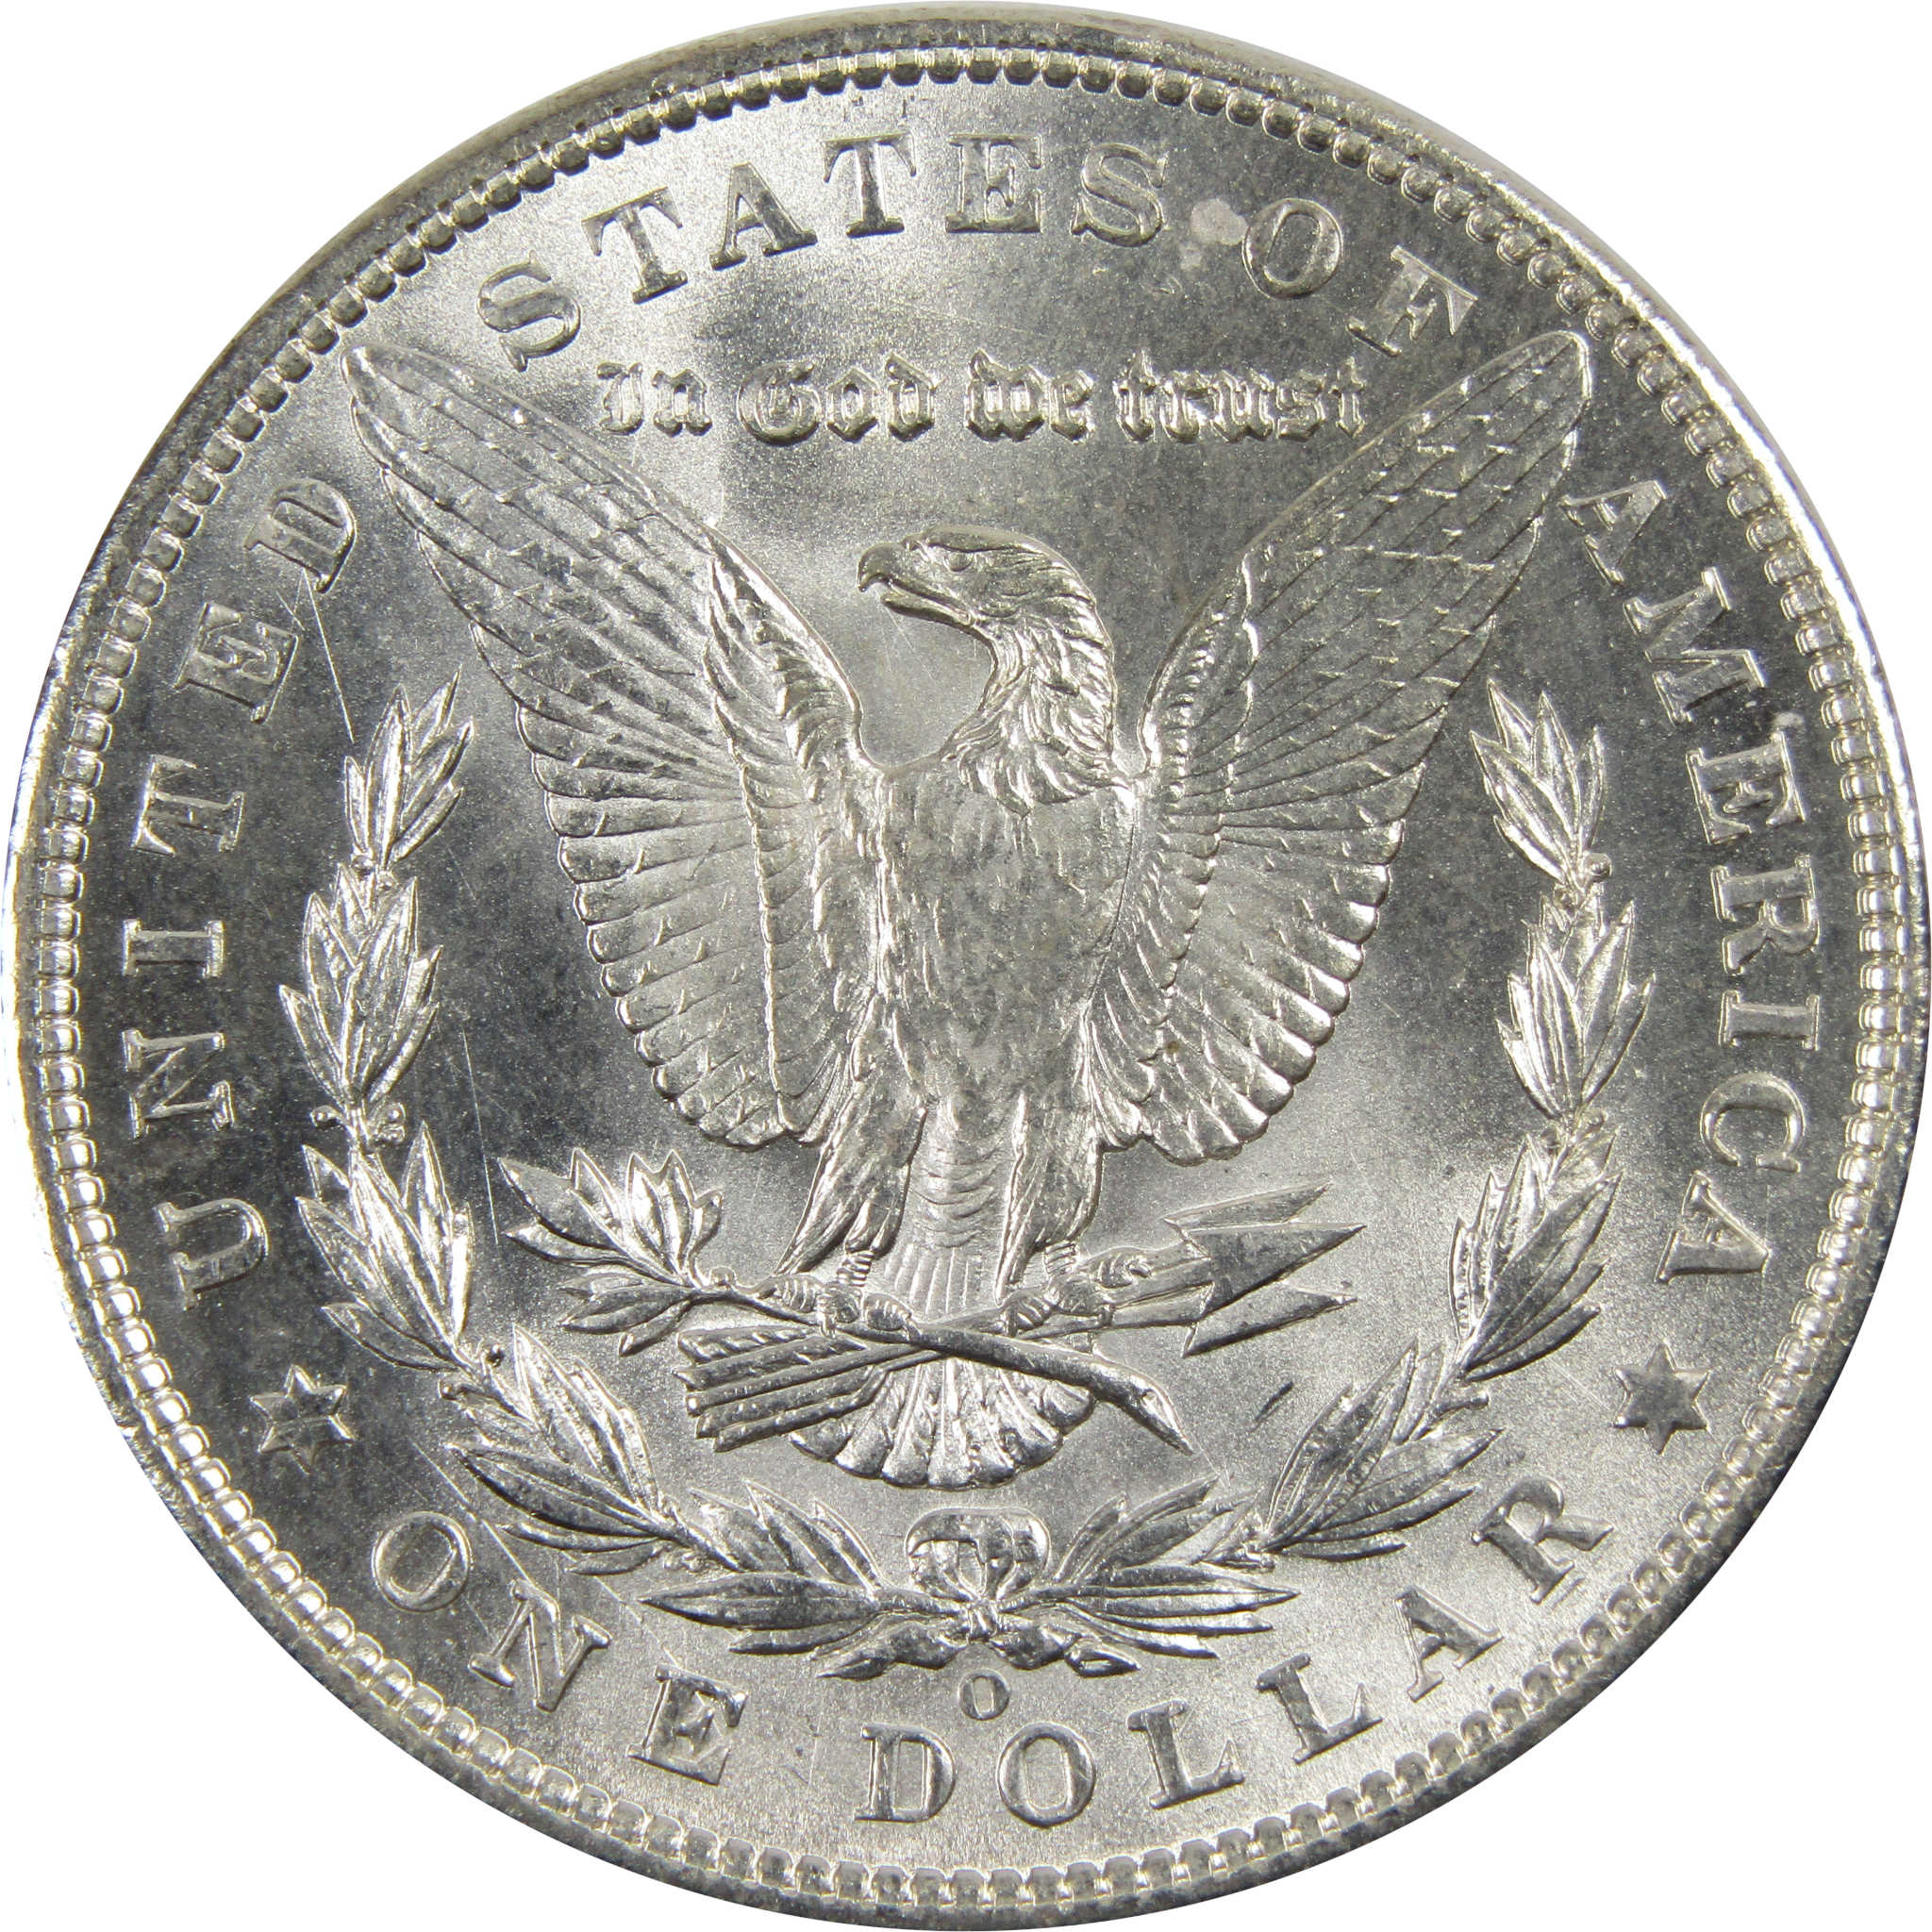 1903 O Morgan Dollar BU Choice Uncirculated 90% Silver $1 SKU:I7917 - Morgan coin - Morgan silver dollar - Morgan silver dollar for sale - Profile Coins &amp; Collectibles